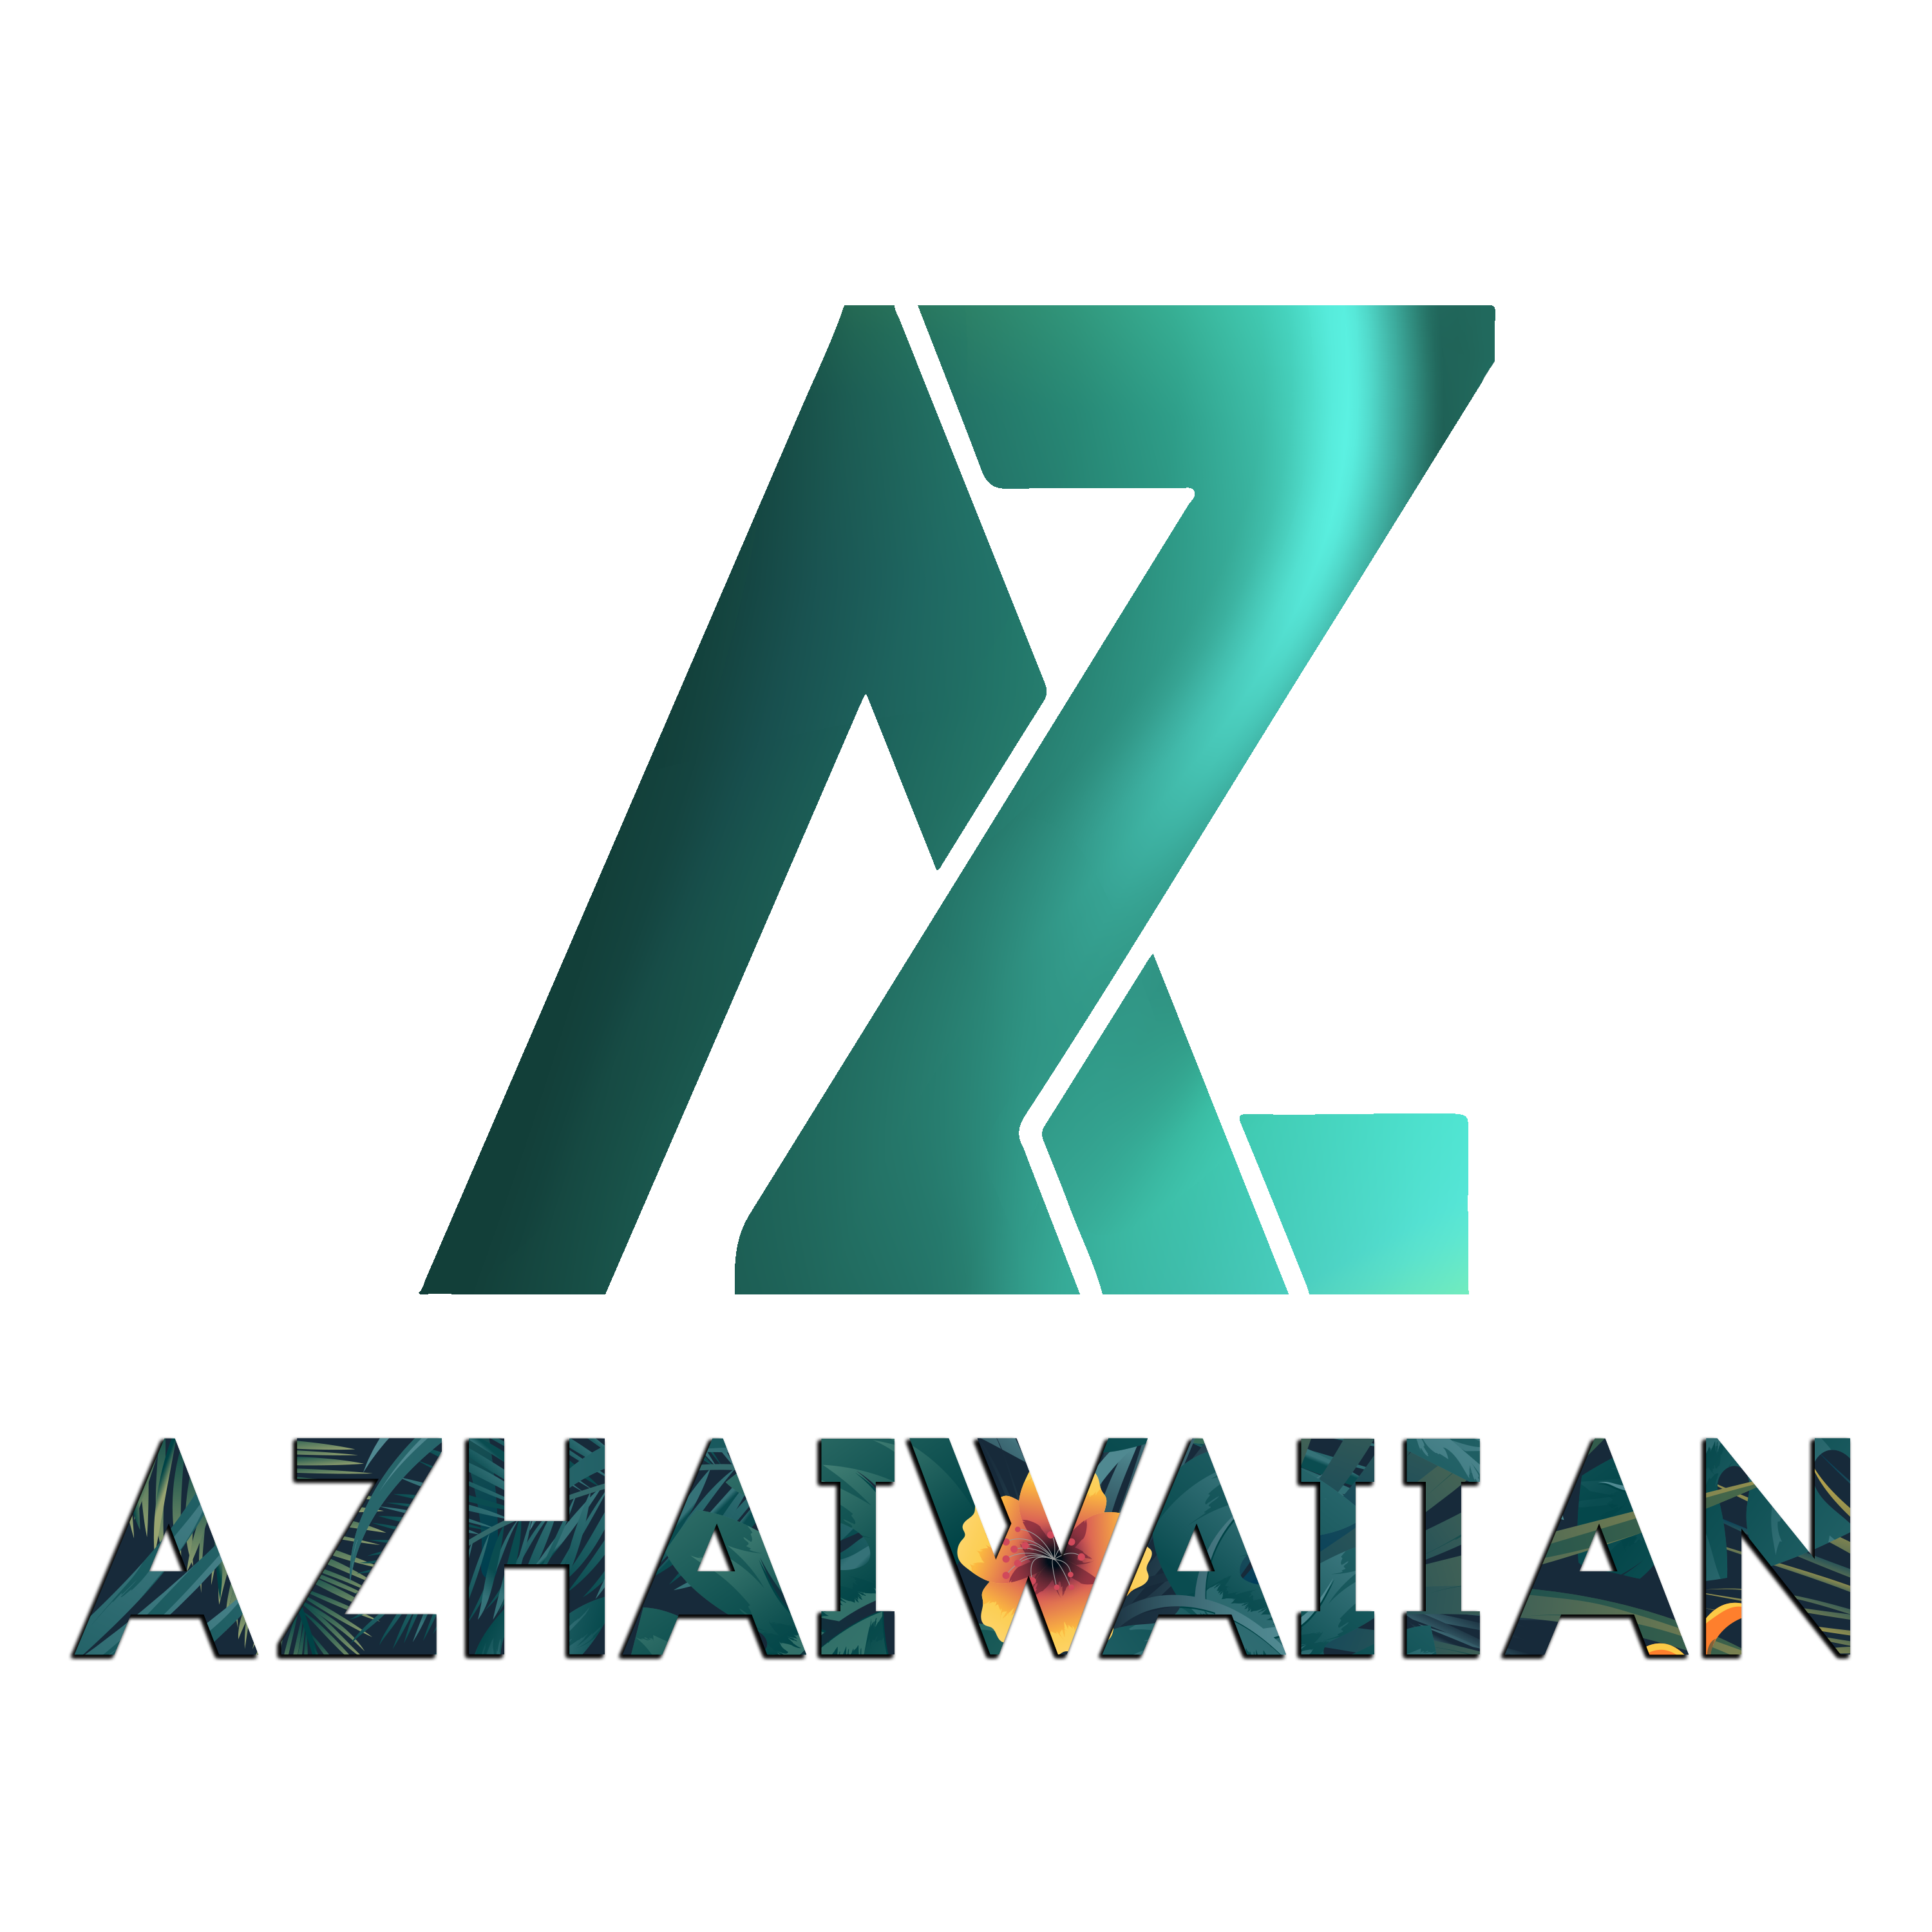 Azhawaiian